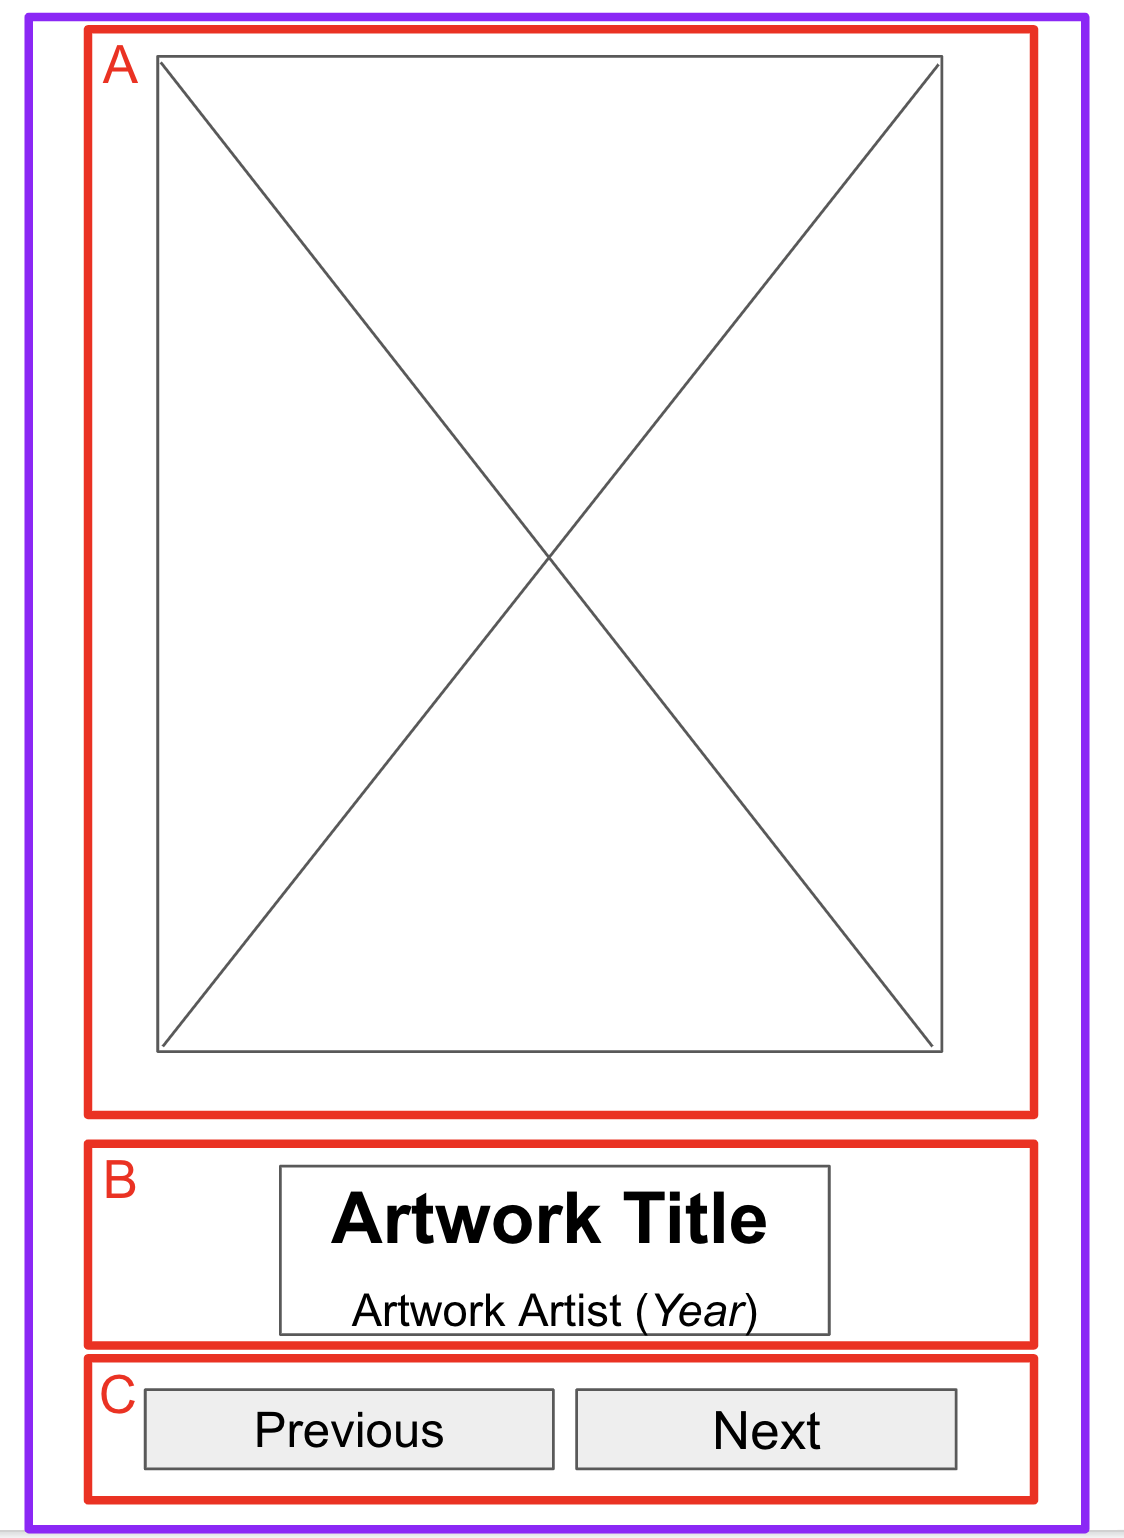 在低保真原型上绘制的边界，其中勾勒出三个不同的区块。